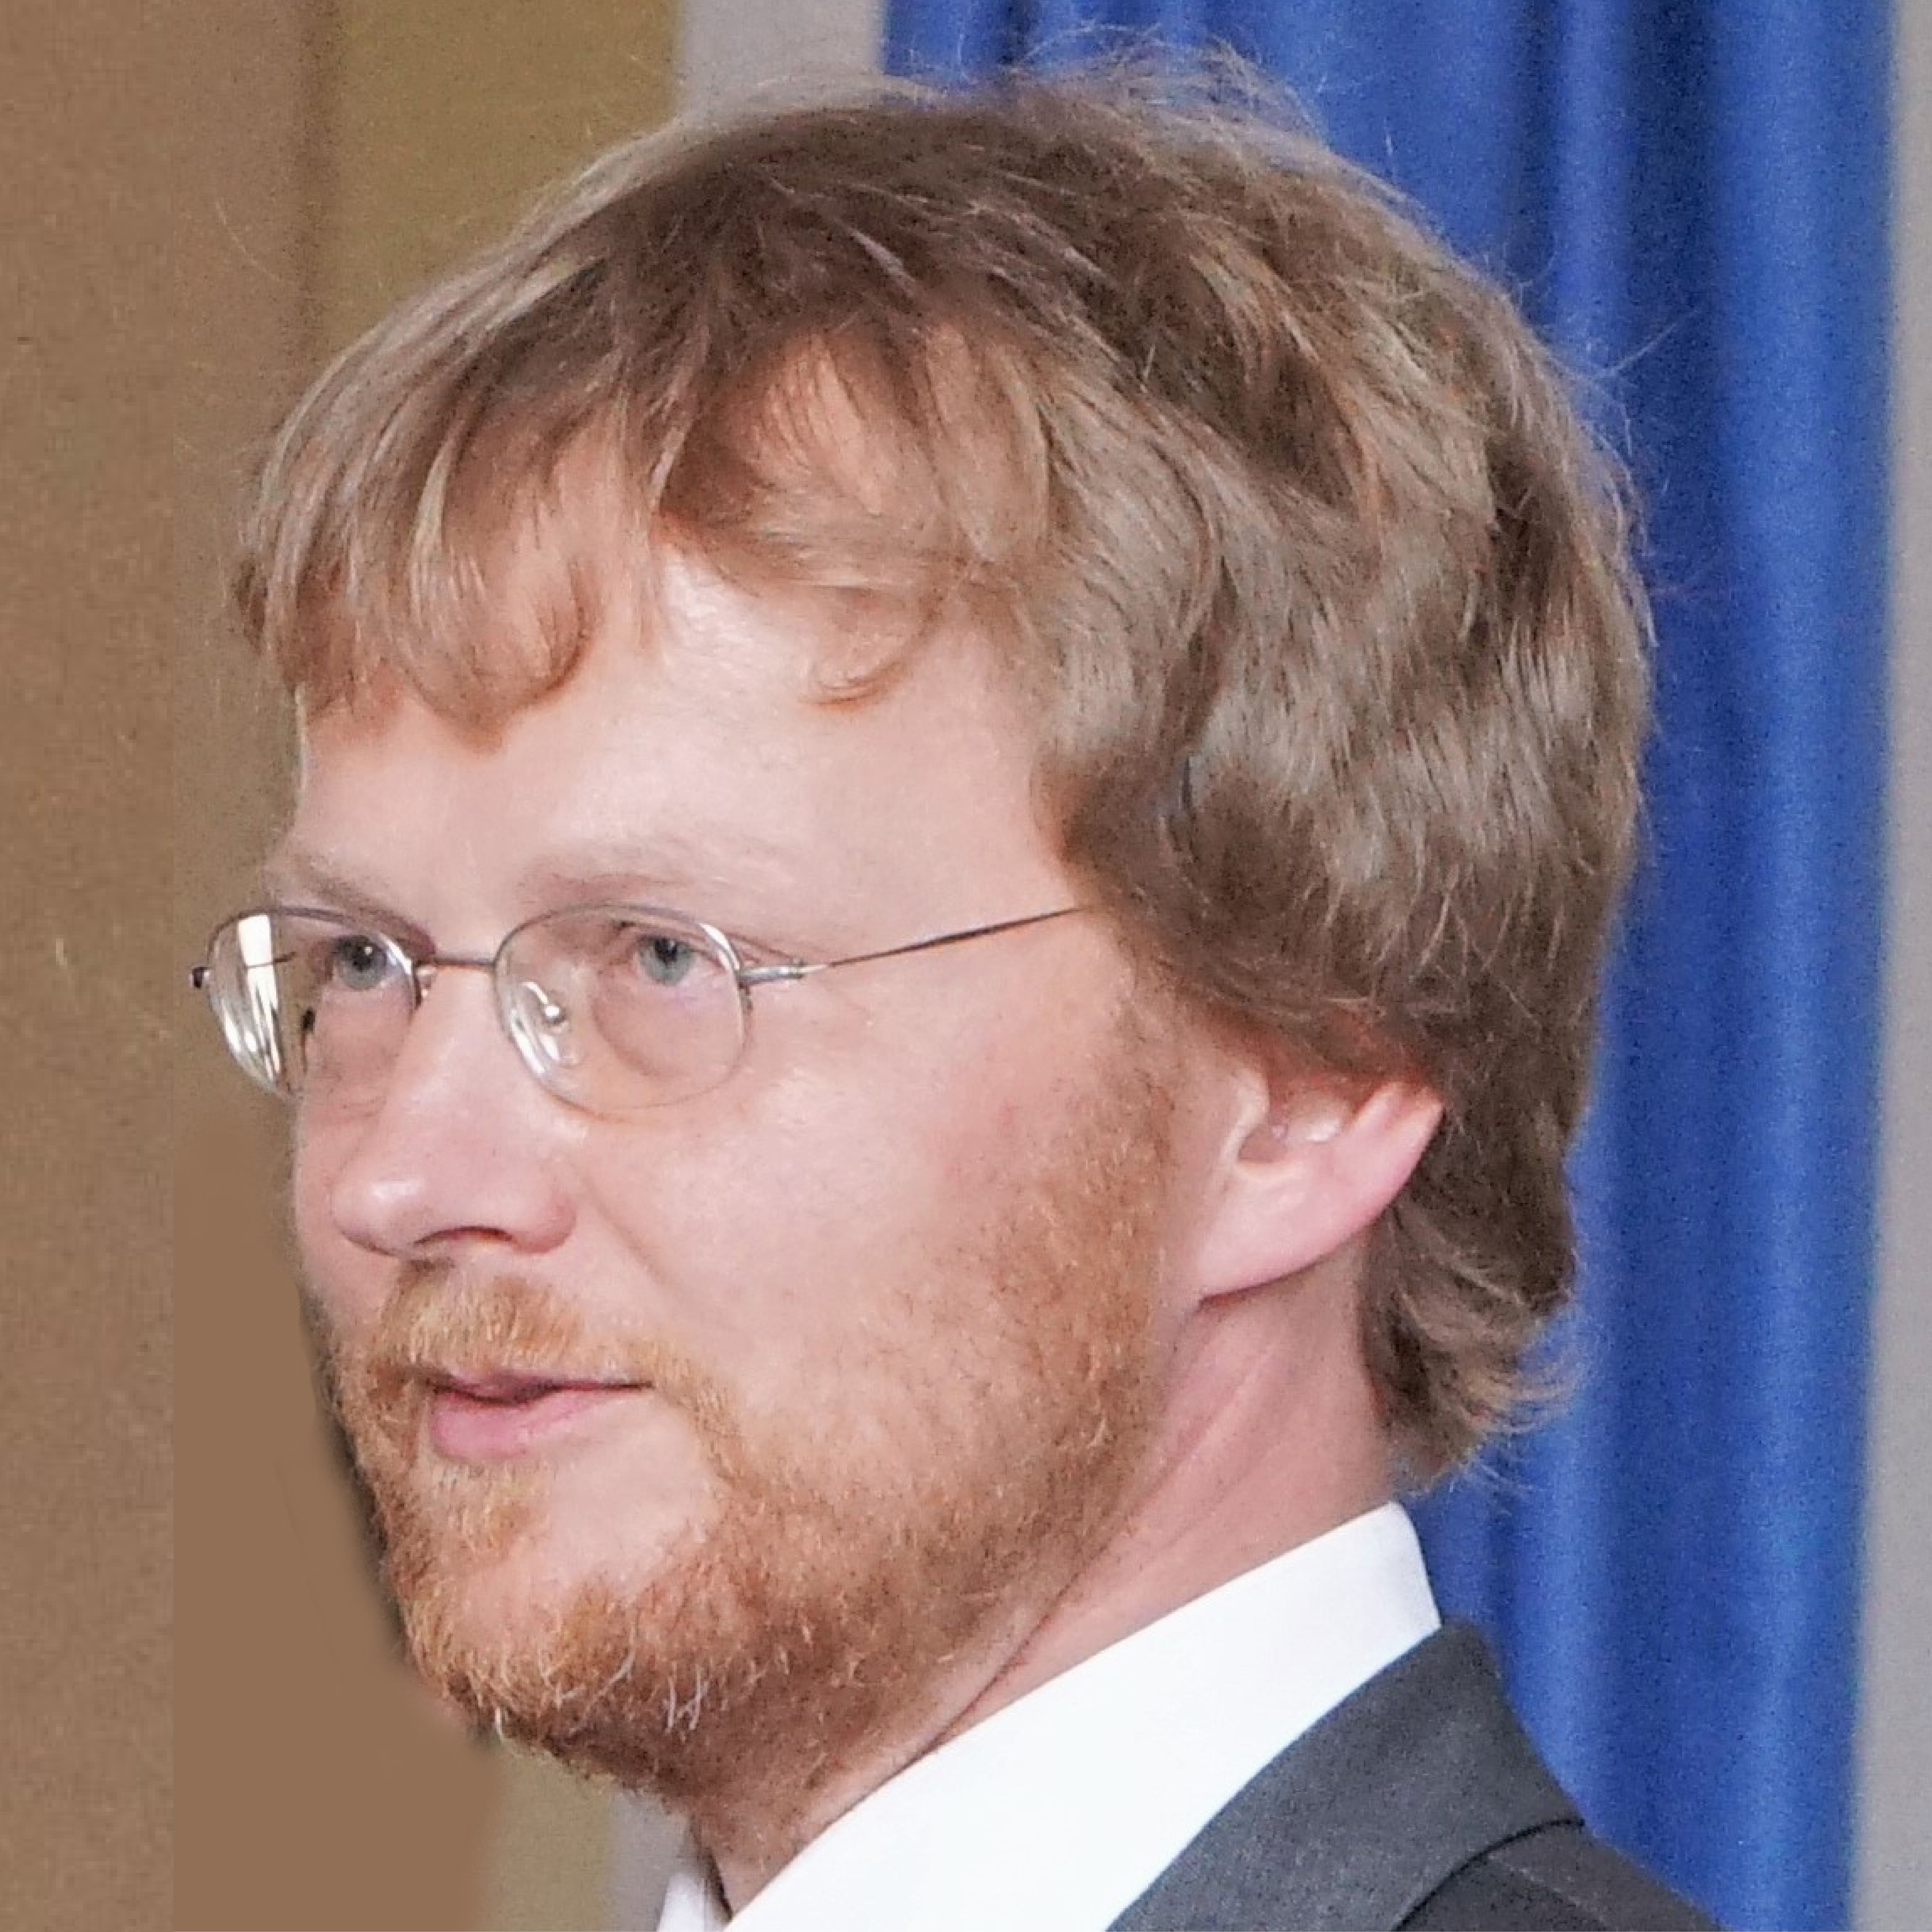 Prof. Dr. Dr. Lars Schmidt-Thieme